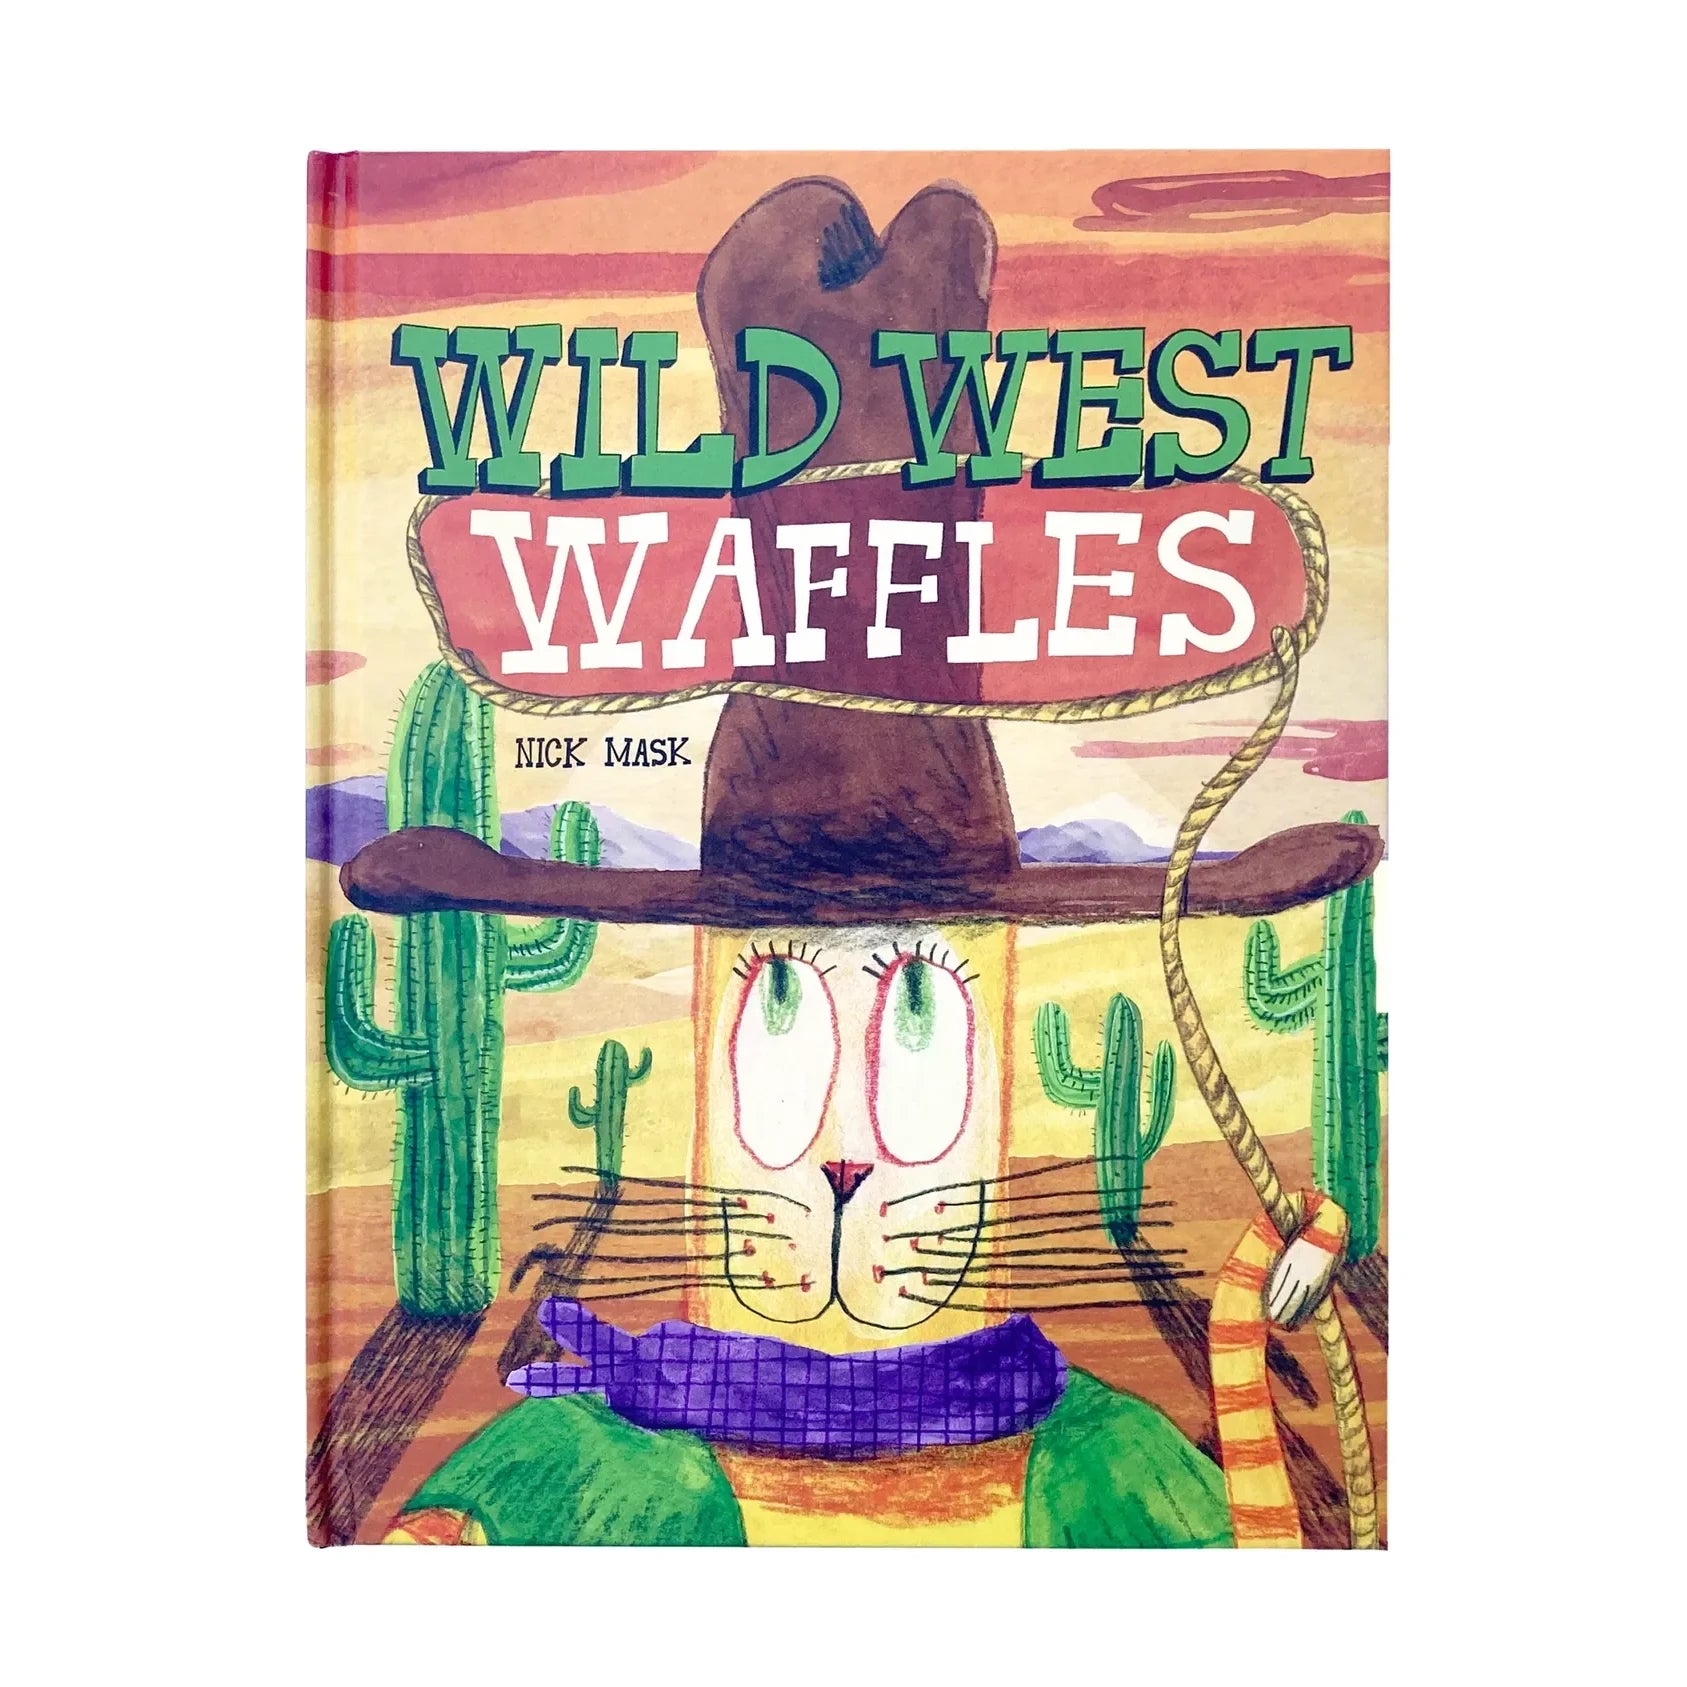 Wild West Waffles